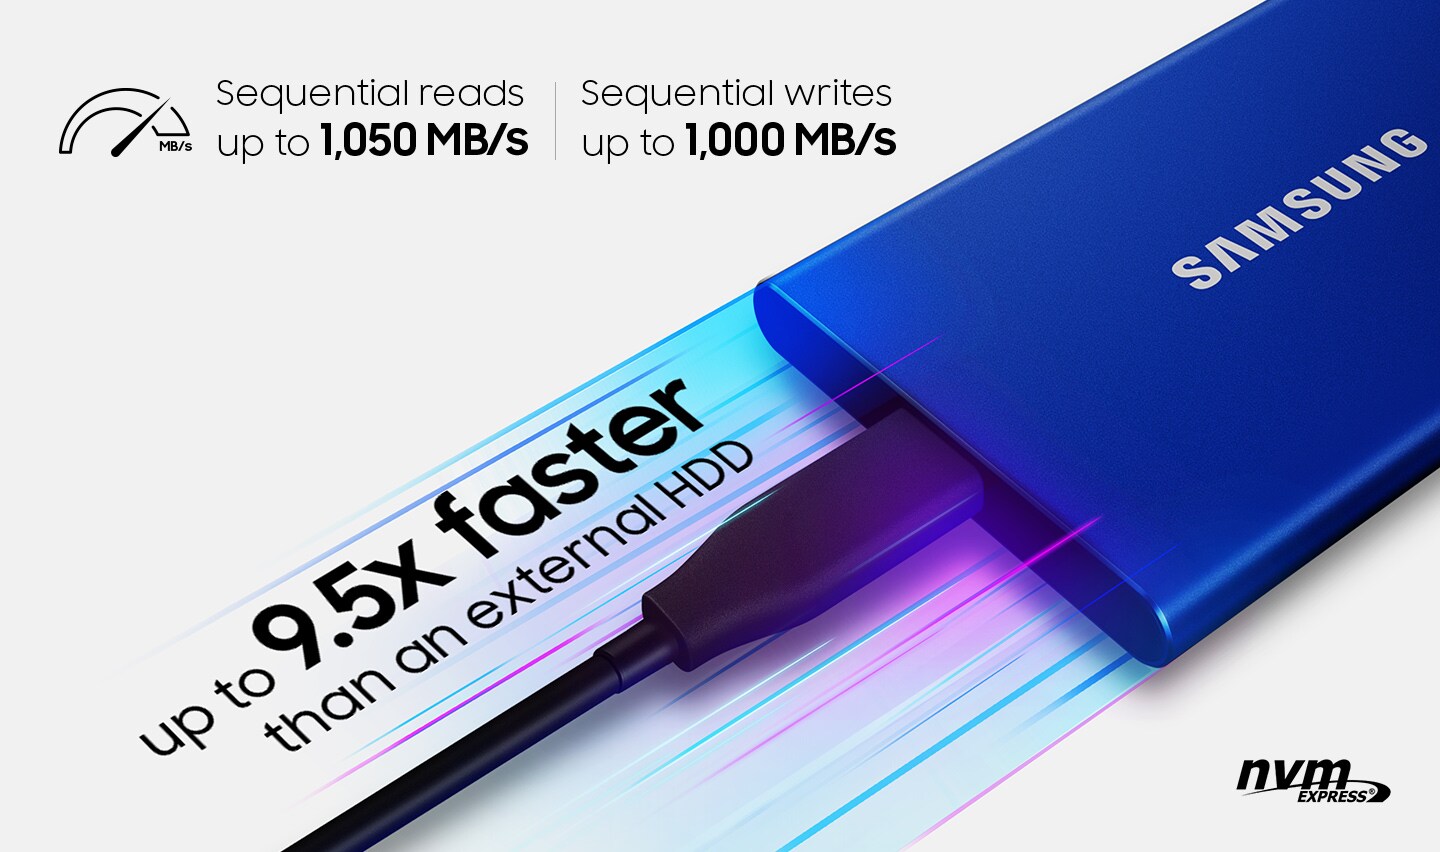 Samsung Disque dur SSD externe Portable 2To T7 bleu indigo pas